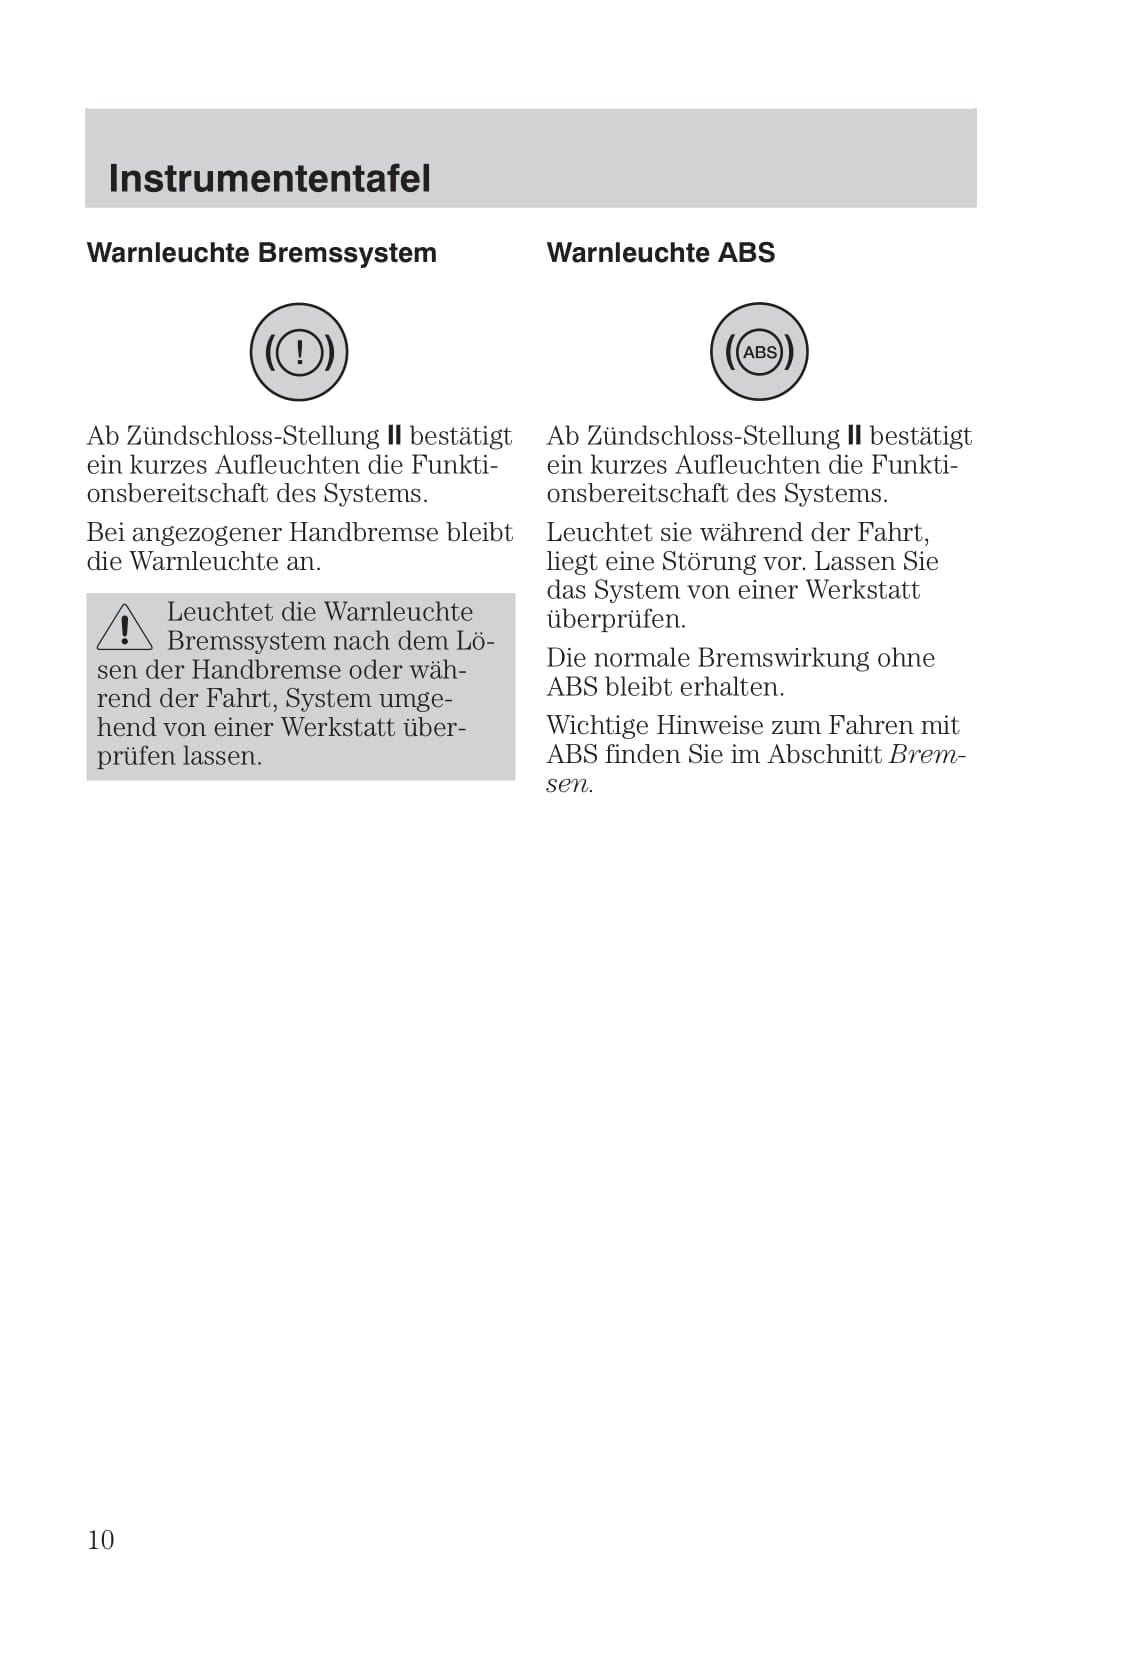 1999-2005 Ford Focus Bedienungsanleitung | Deutsch